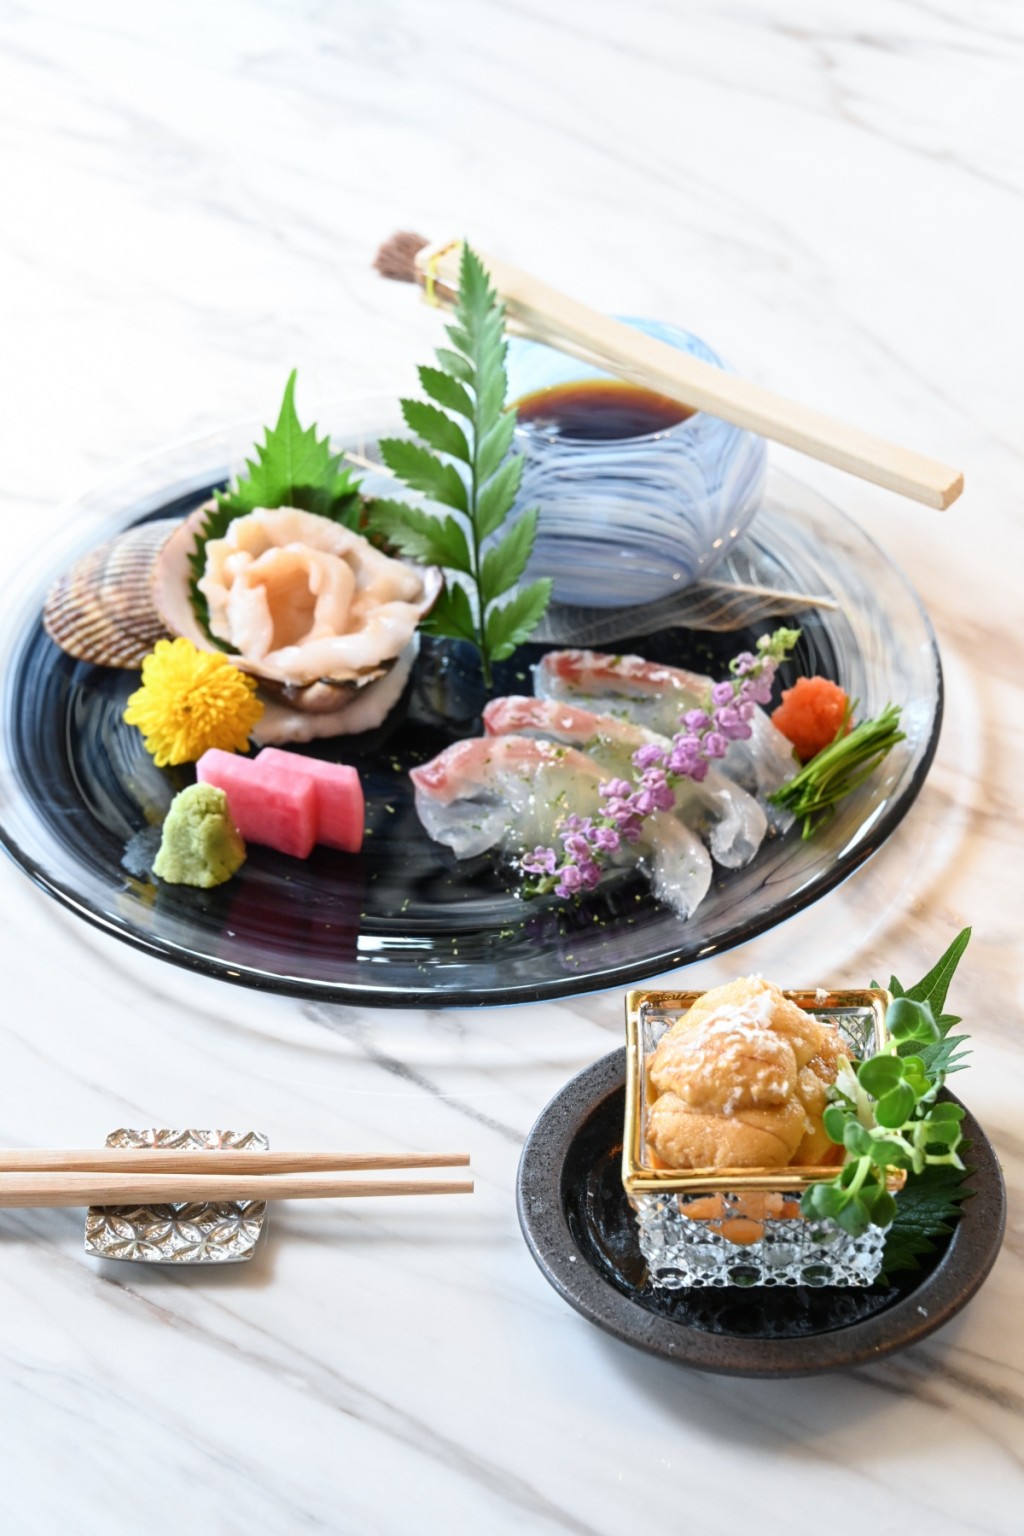 時令刺身 刺身款式視乎季節而定，現在主要是北海道紫海膽、石垣貝及蜜柑鯛。